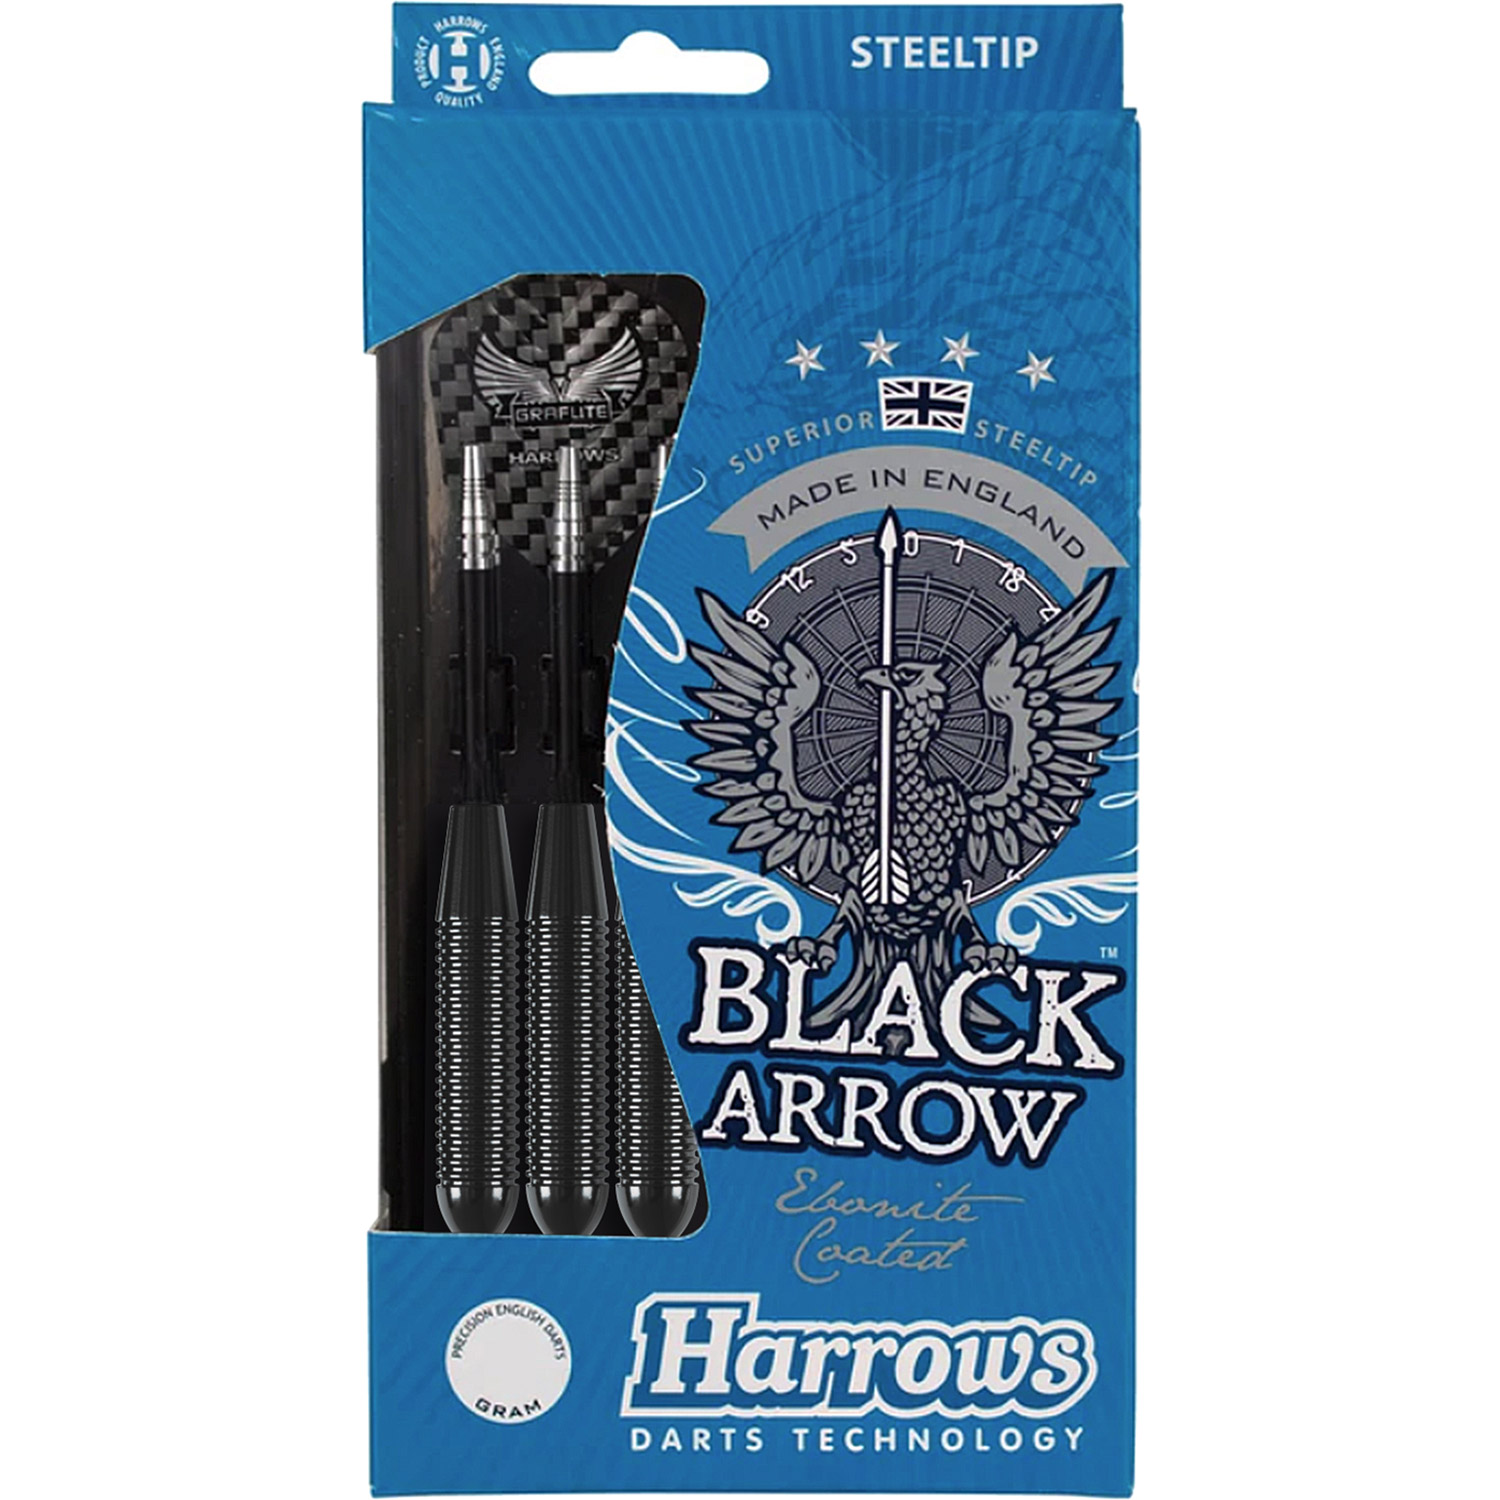 Harrows Black Arrow darts 22 grams